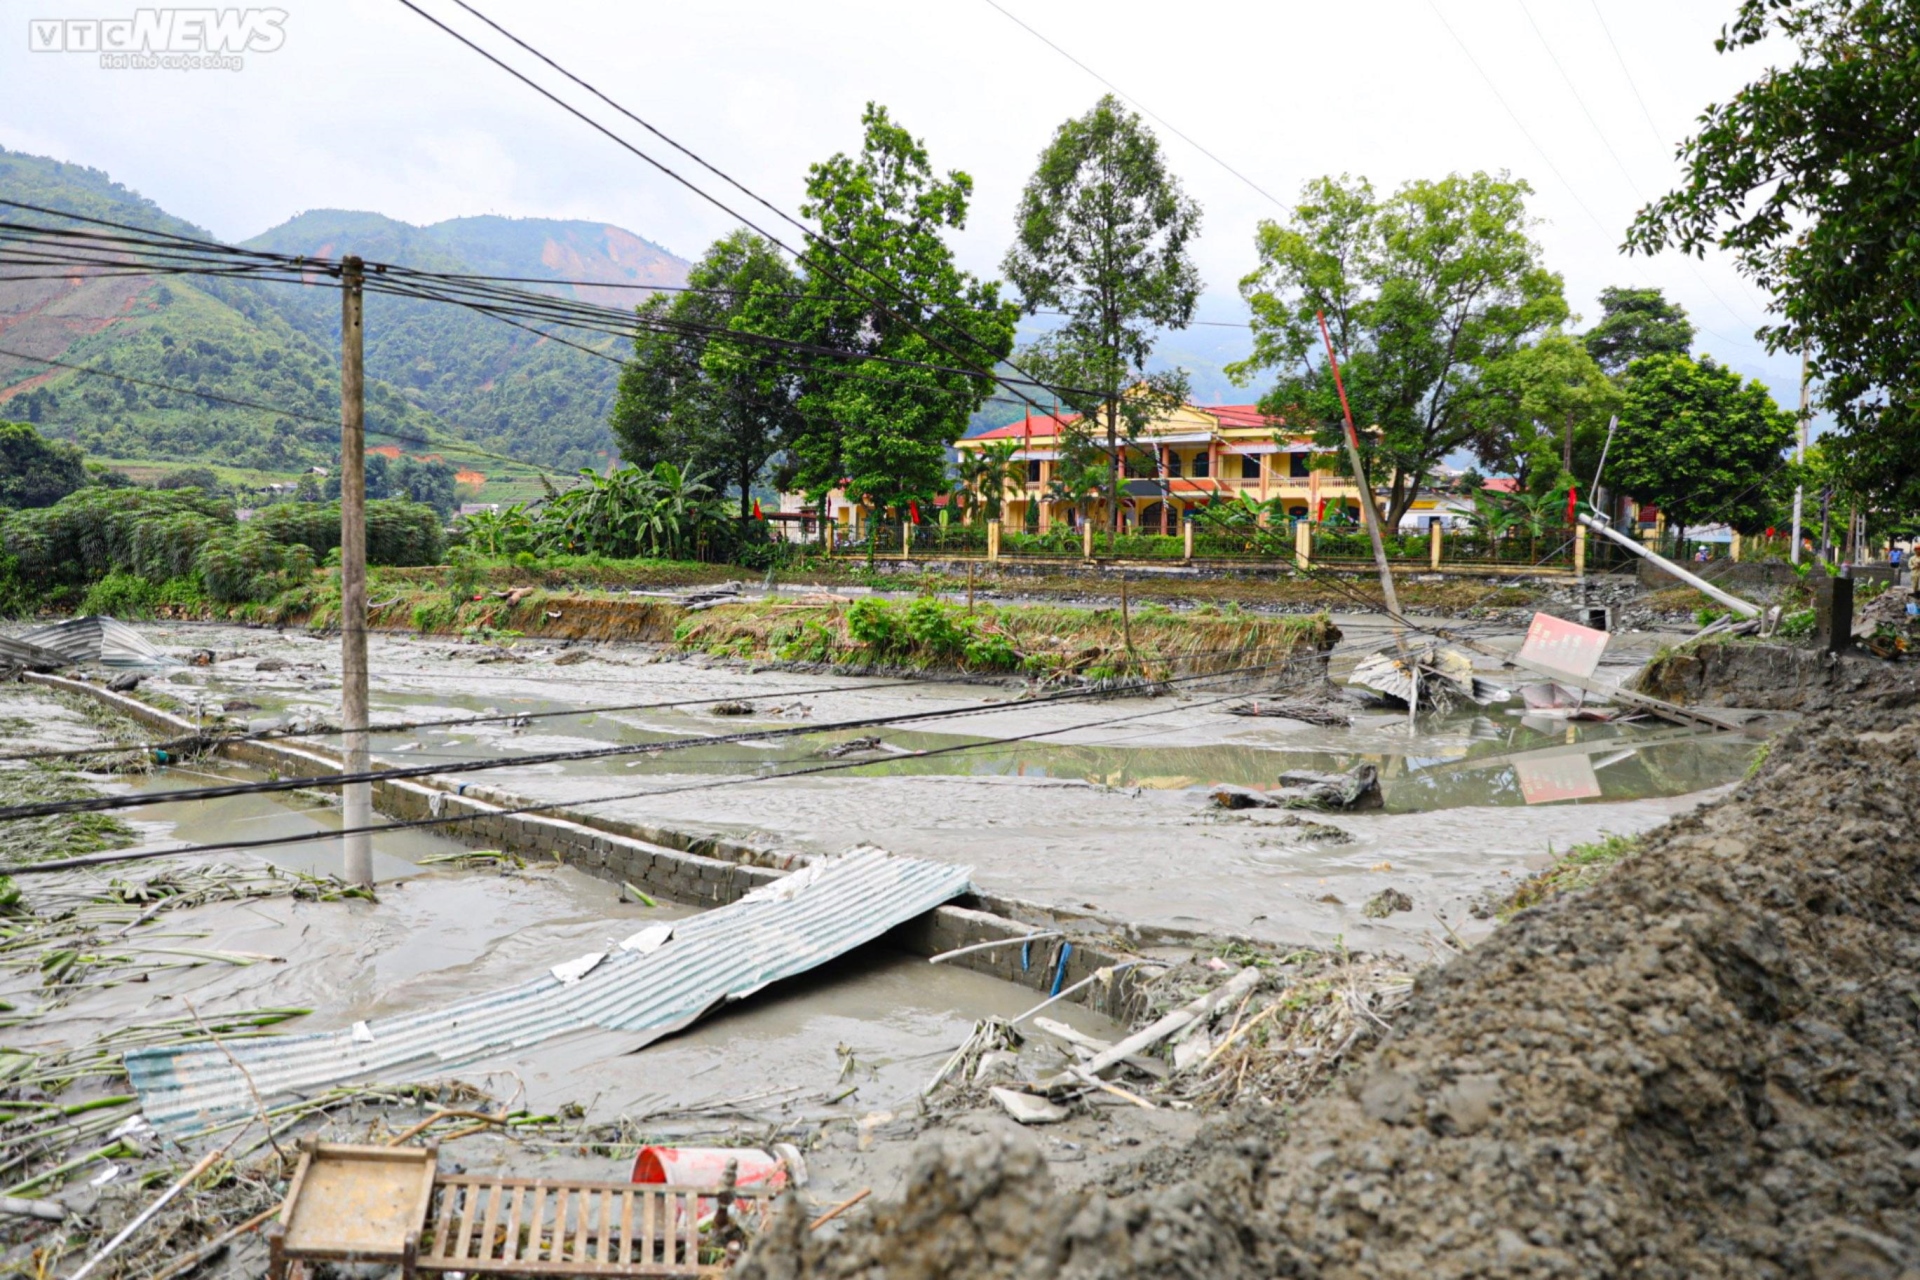 Bản làng tan hoang sau sự cố vỡ hồ thải quặng đồng ở Lào Cai - Ảnh 1.